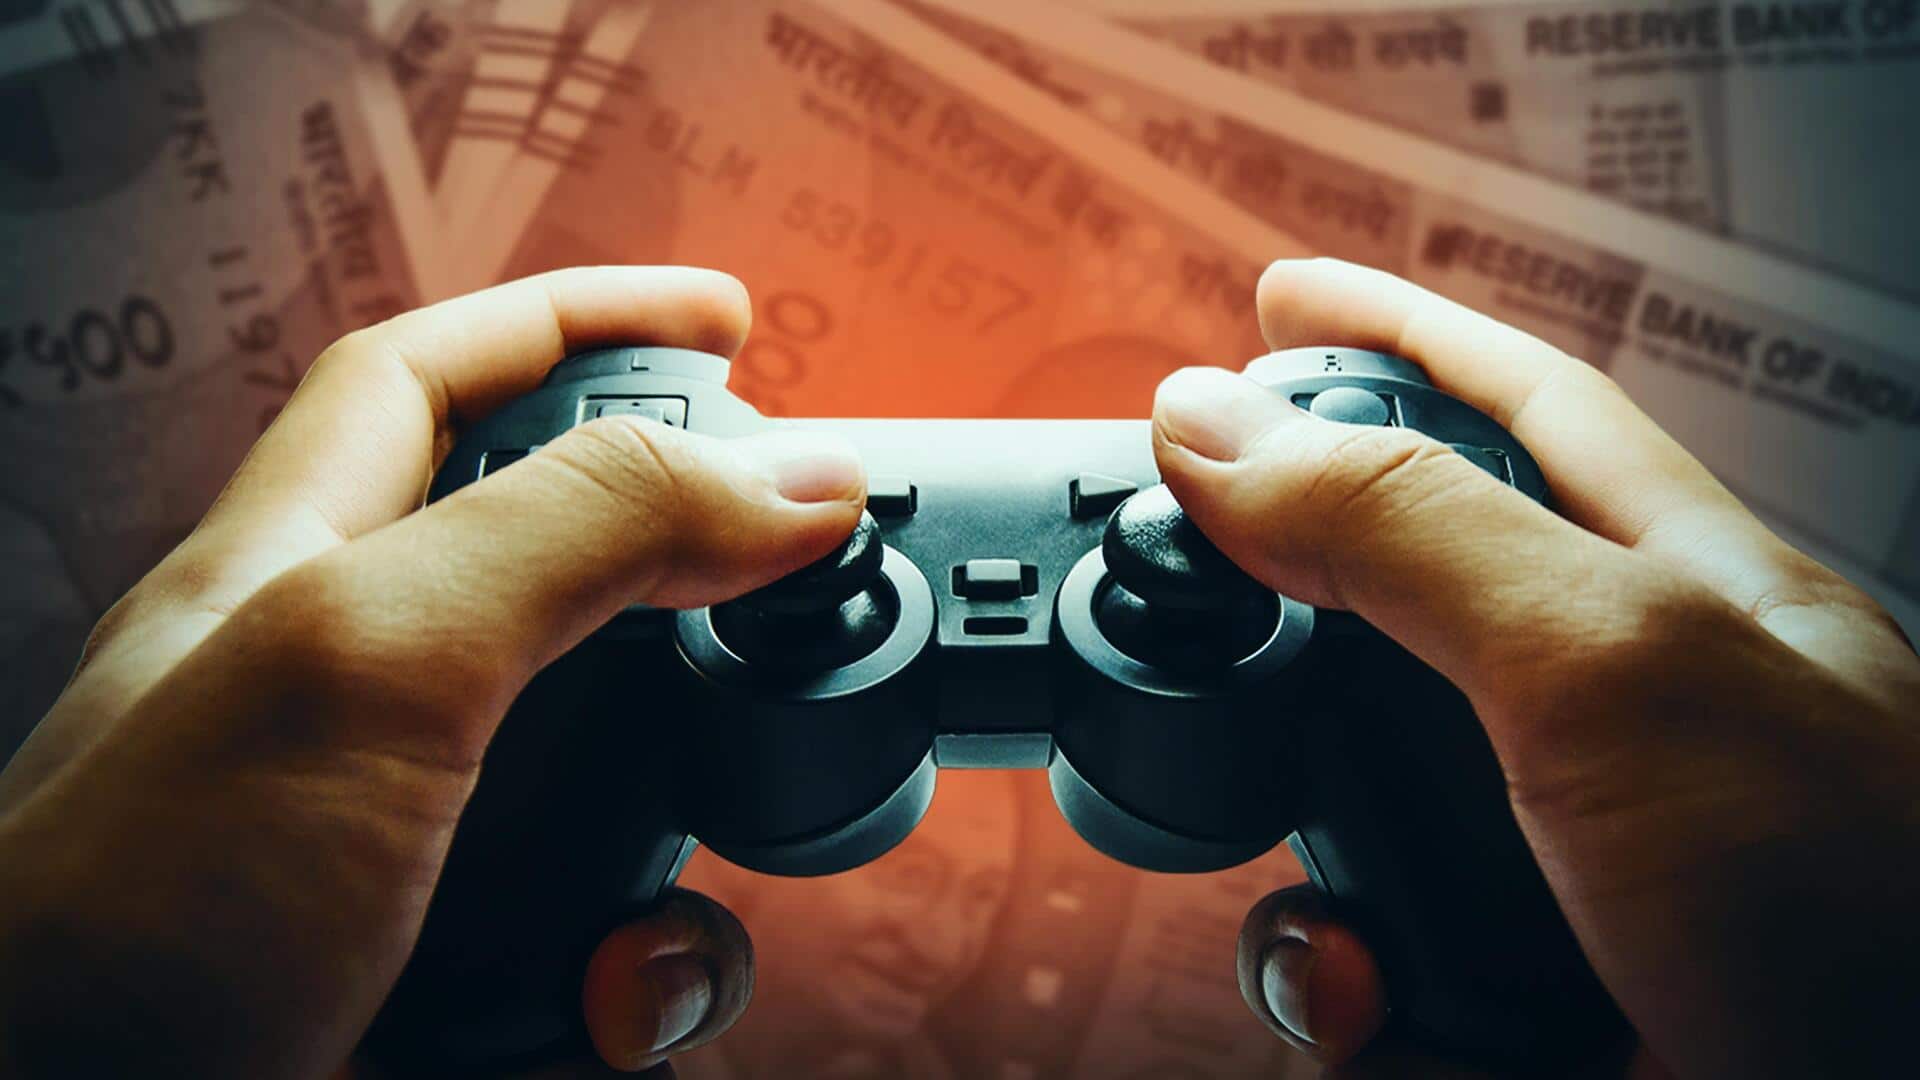 सीरियस गेमर्स कमा रहे हैं 6 से 12 लाख रुपये सालाना, जानिए क्या कहती है रिपोर्ट